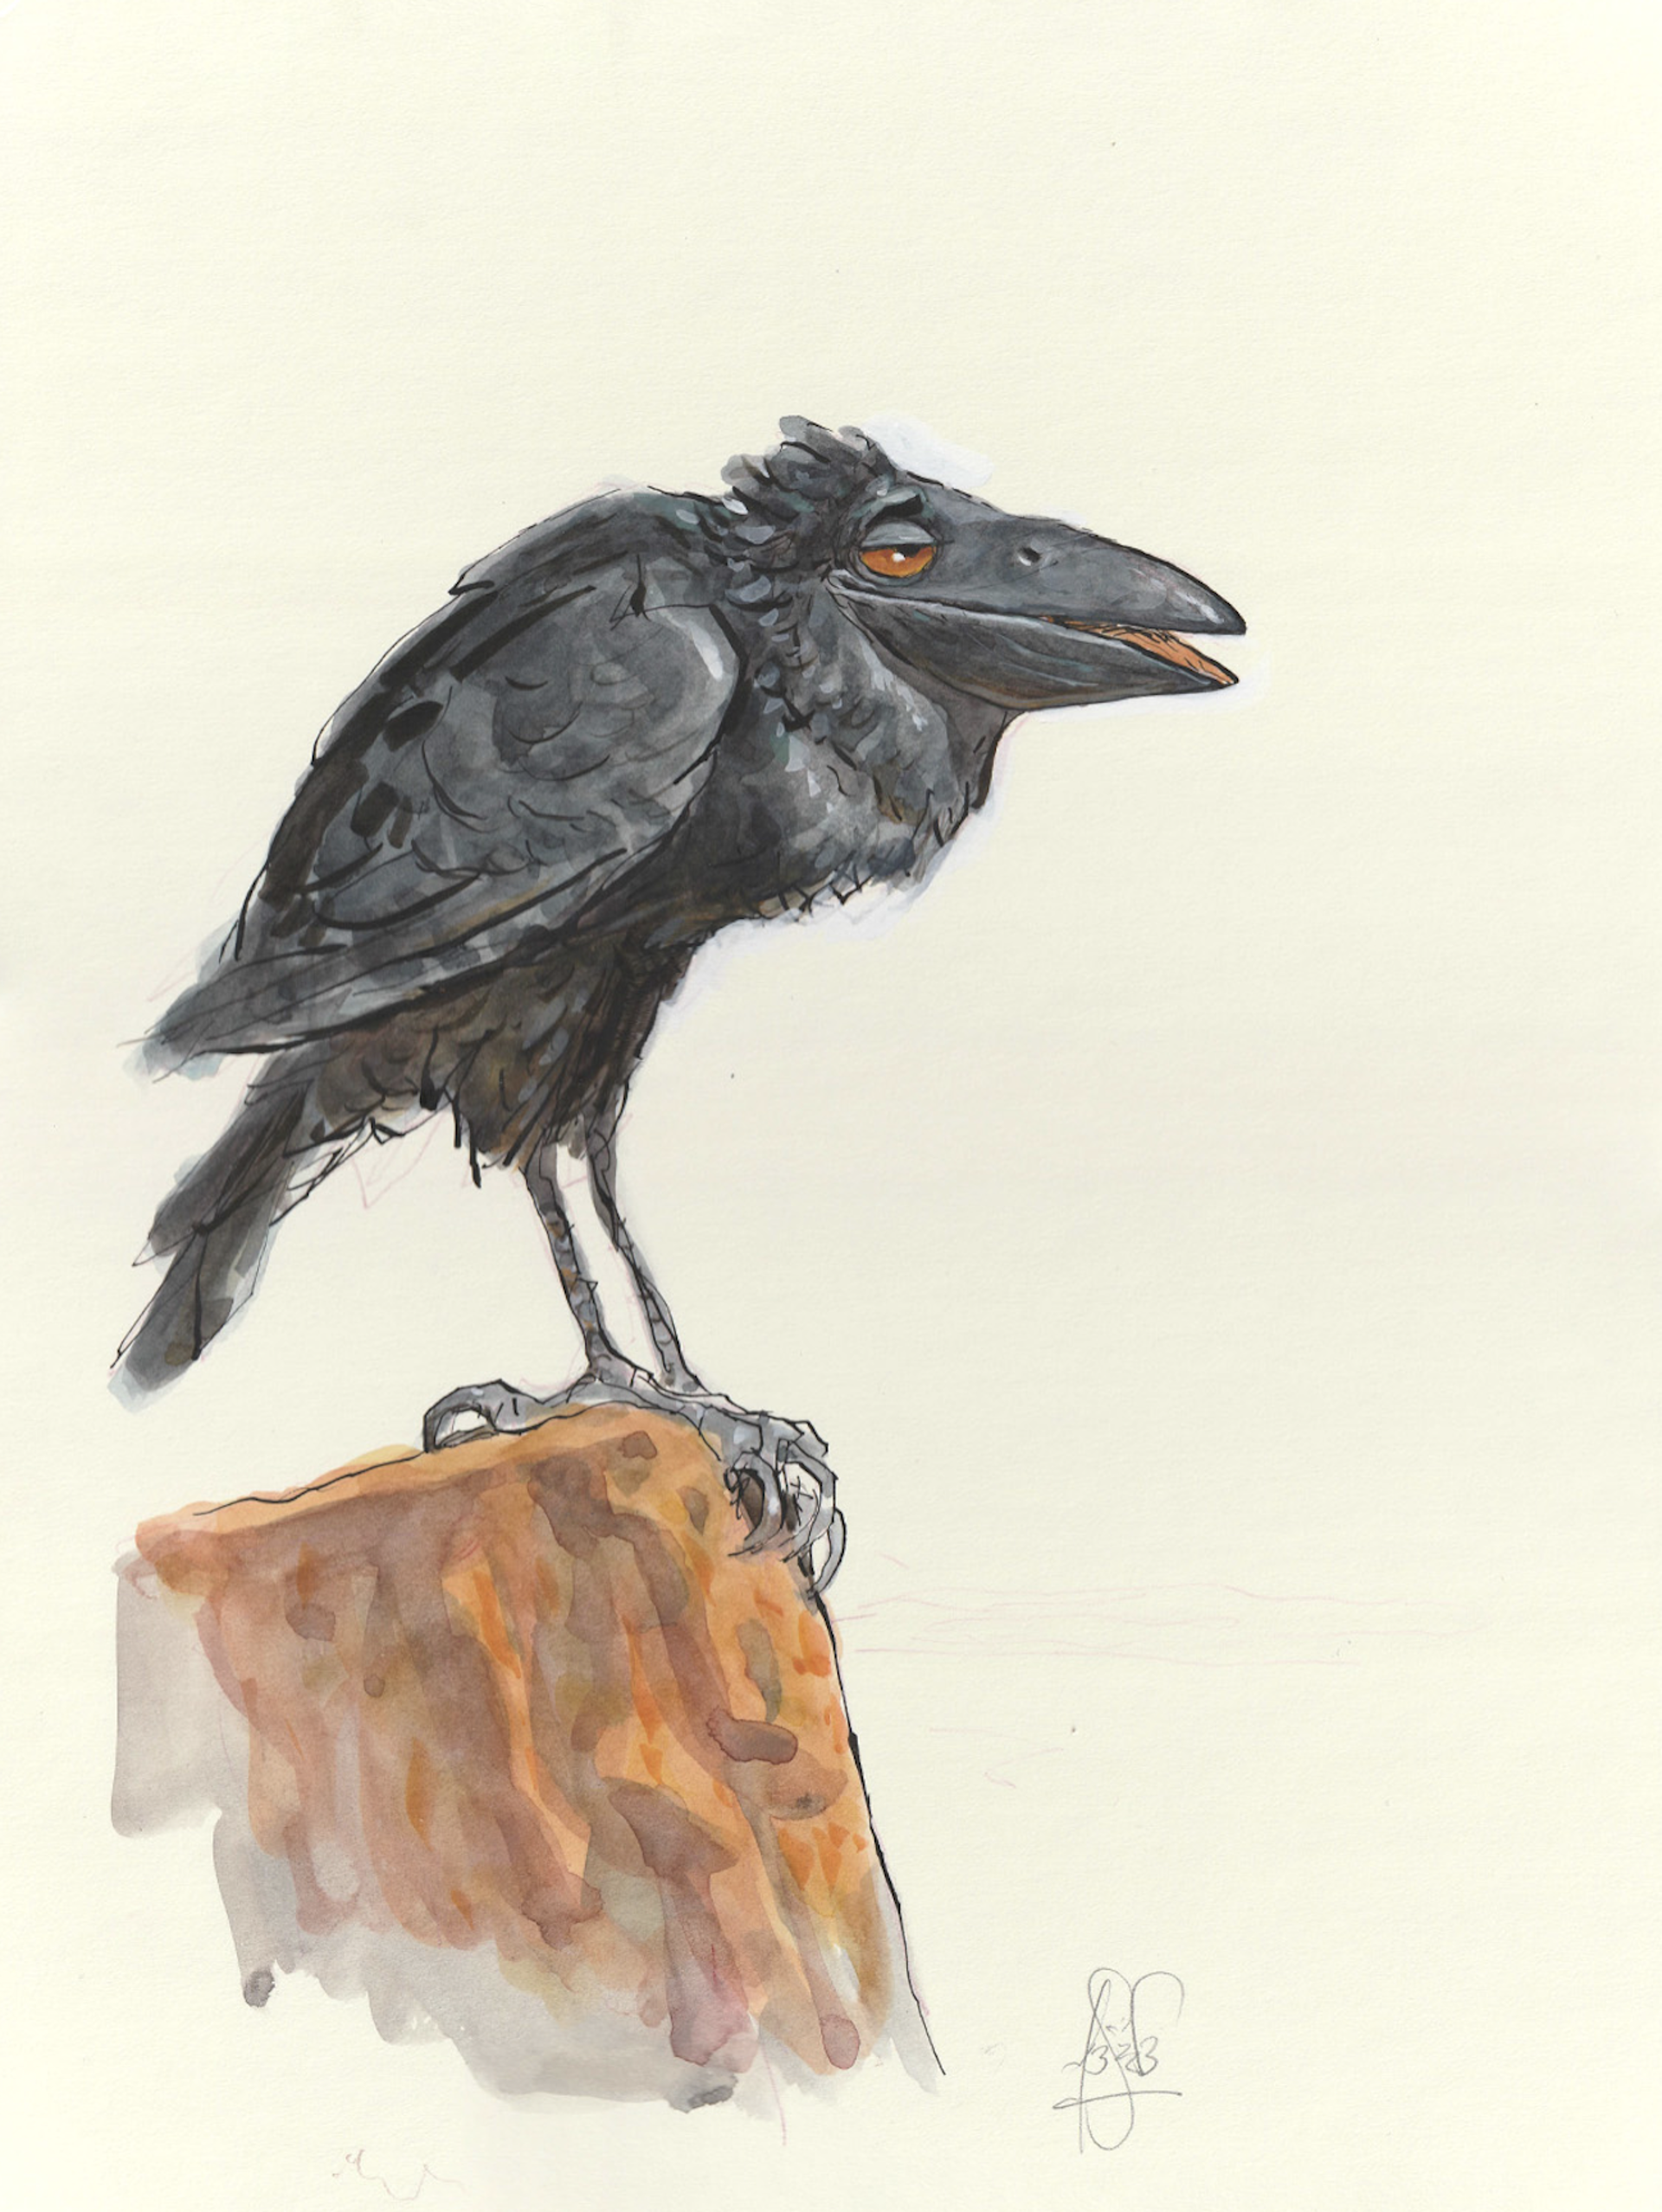 Larrikins - Raven by Peter de Sève